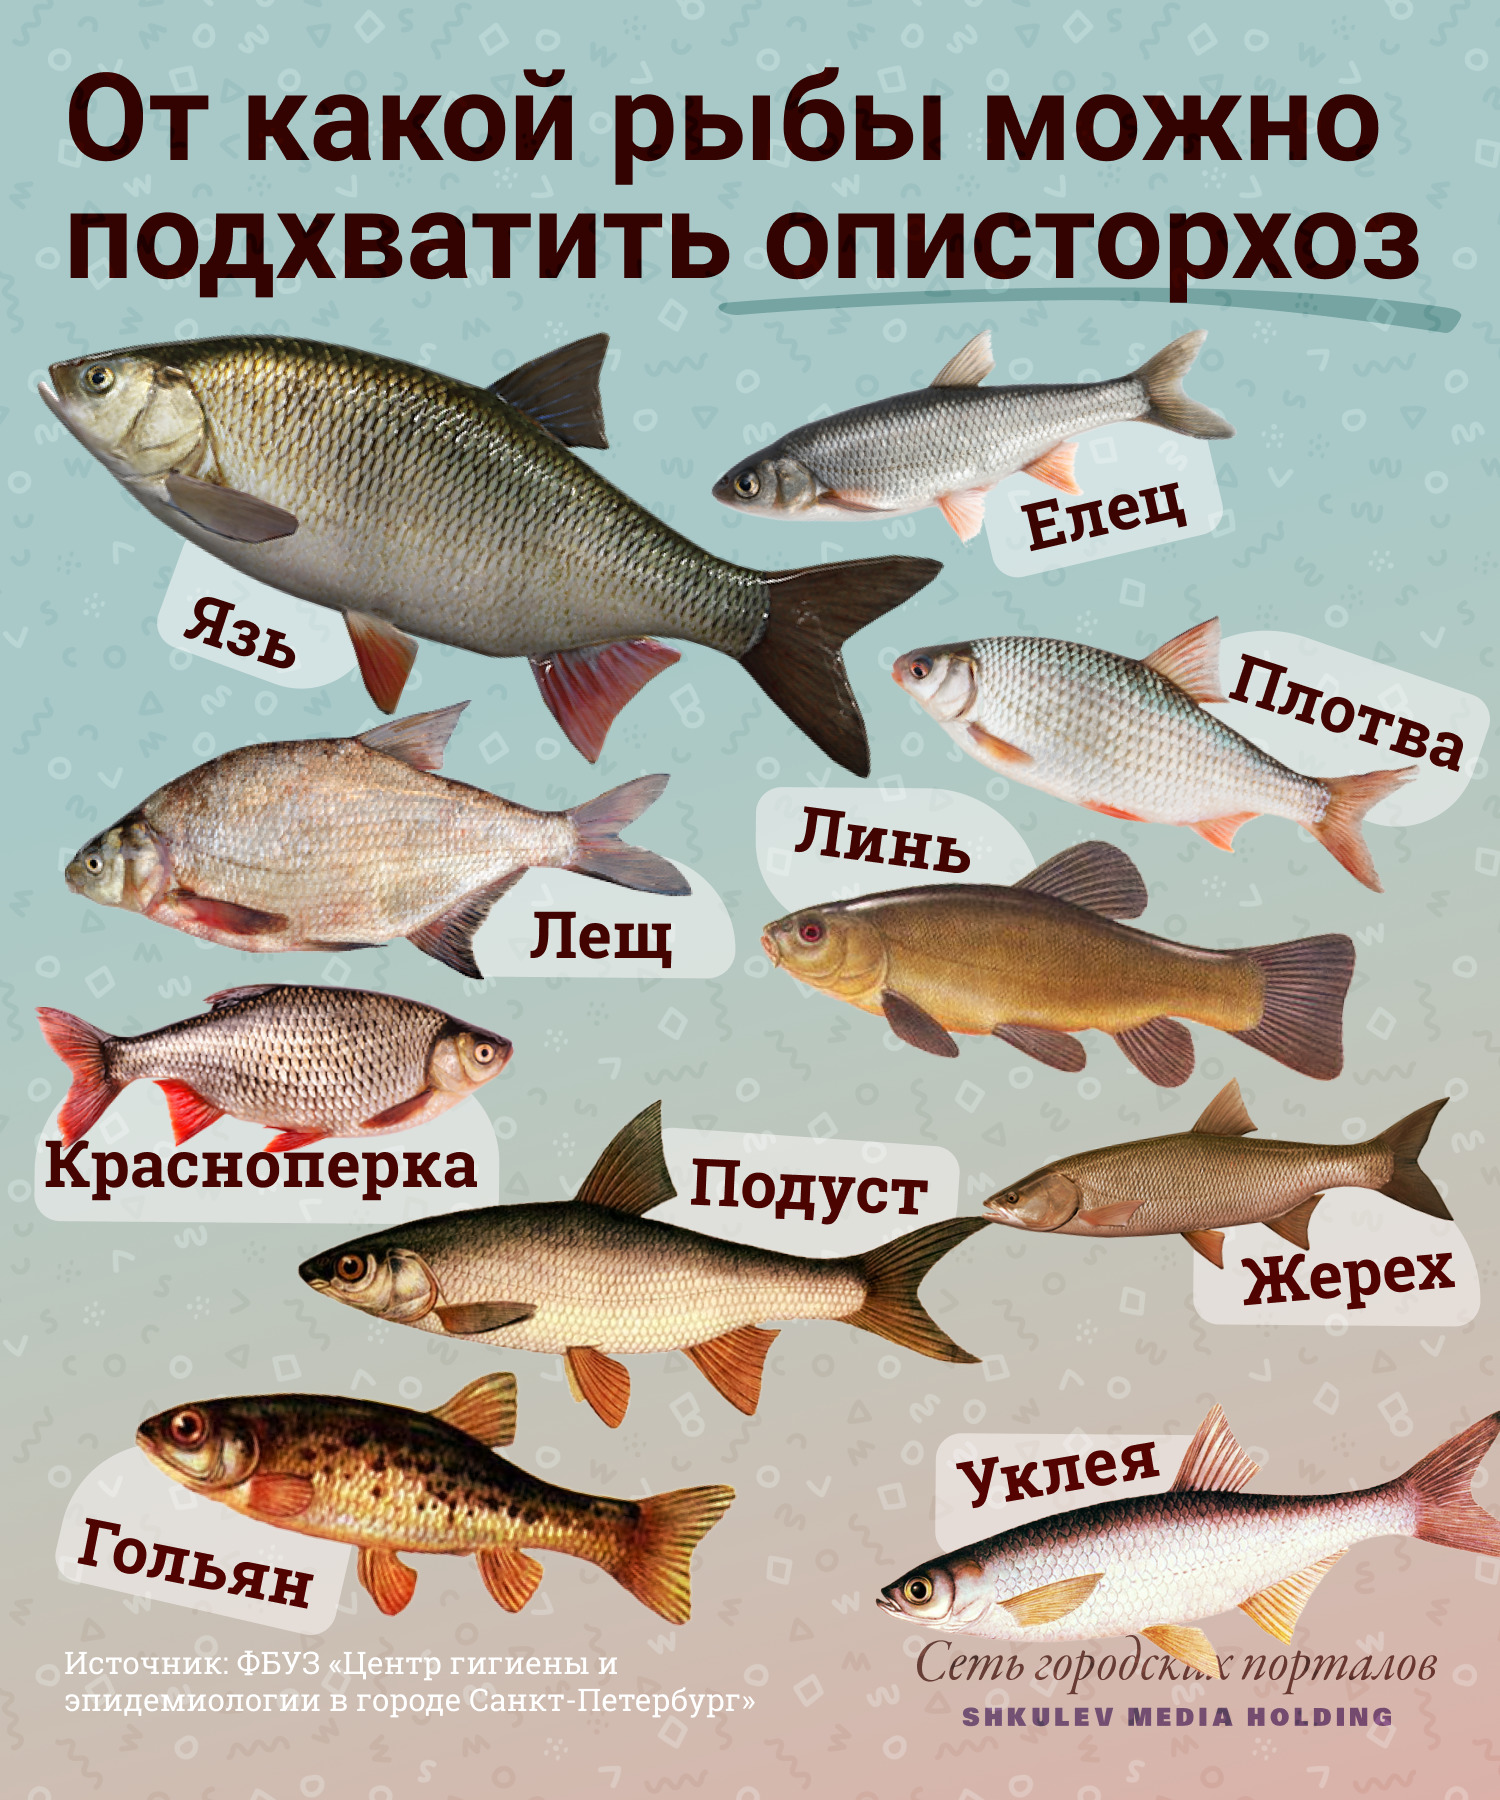 Названия красной рыбы список с фото